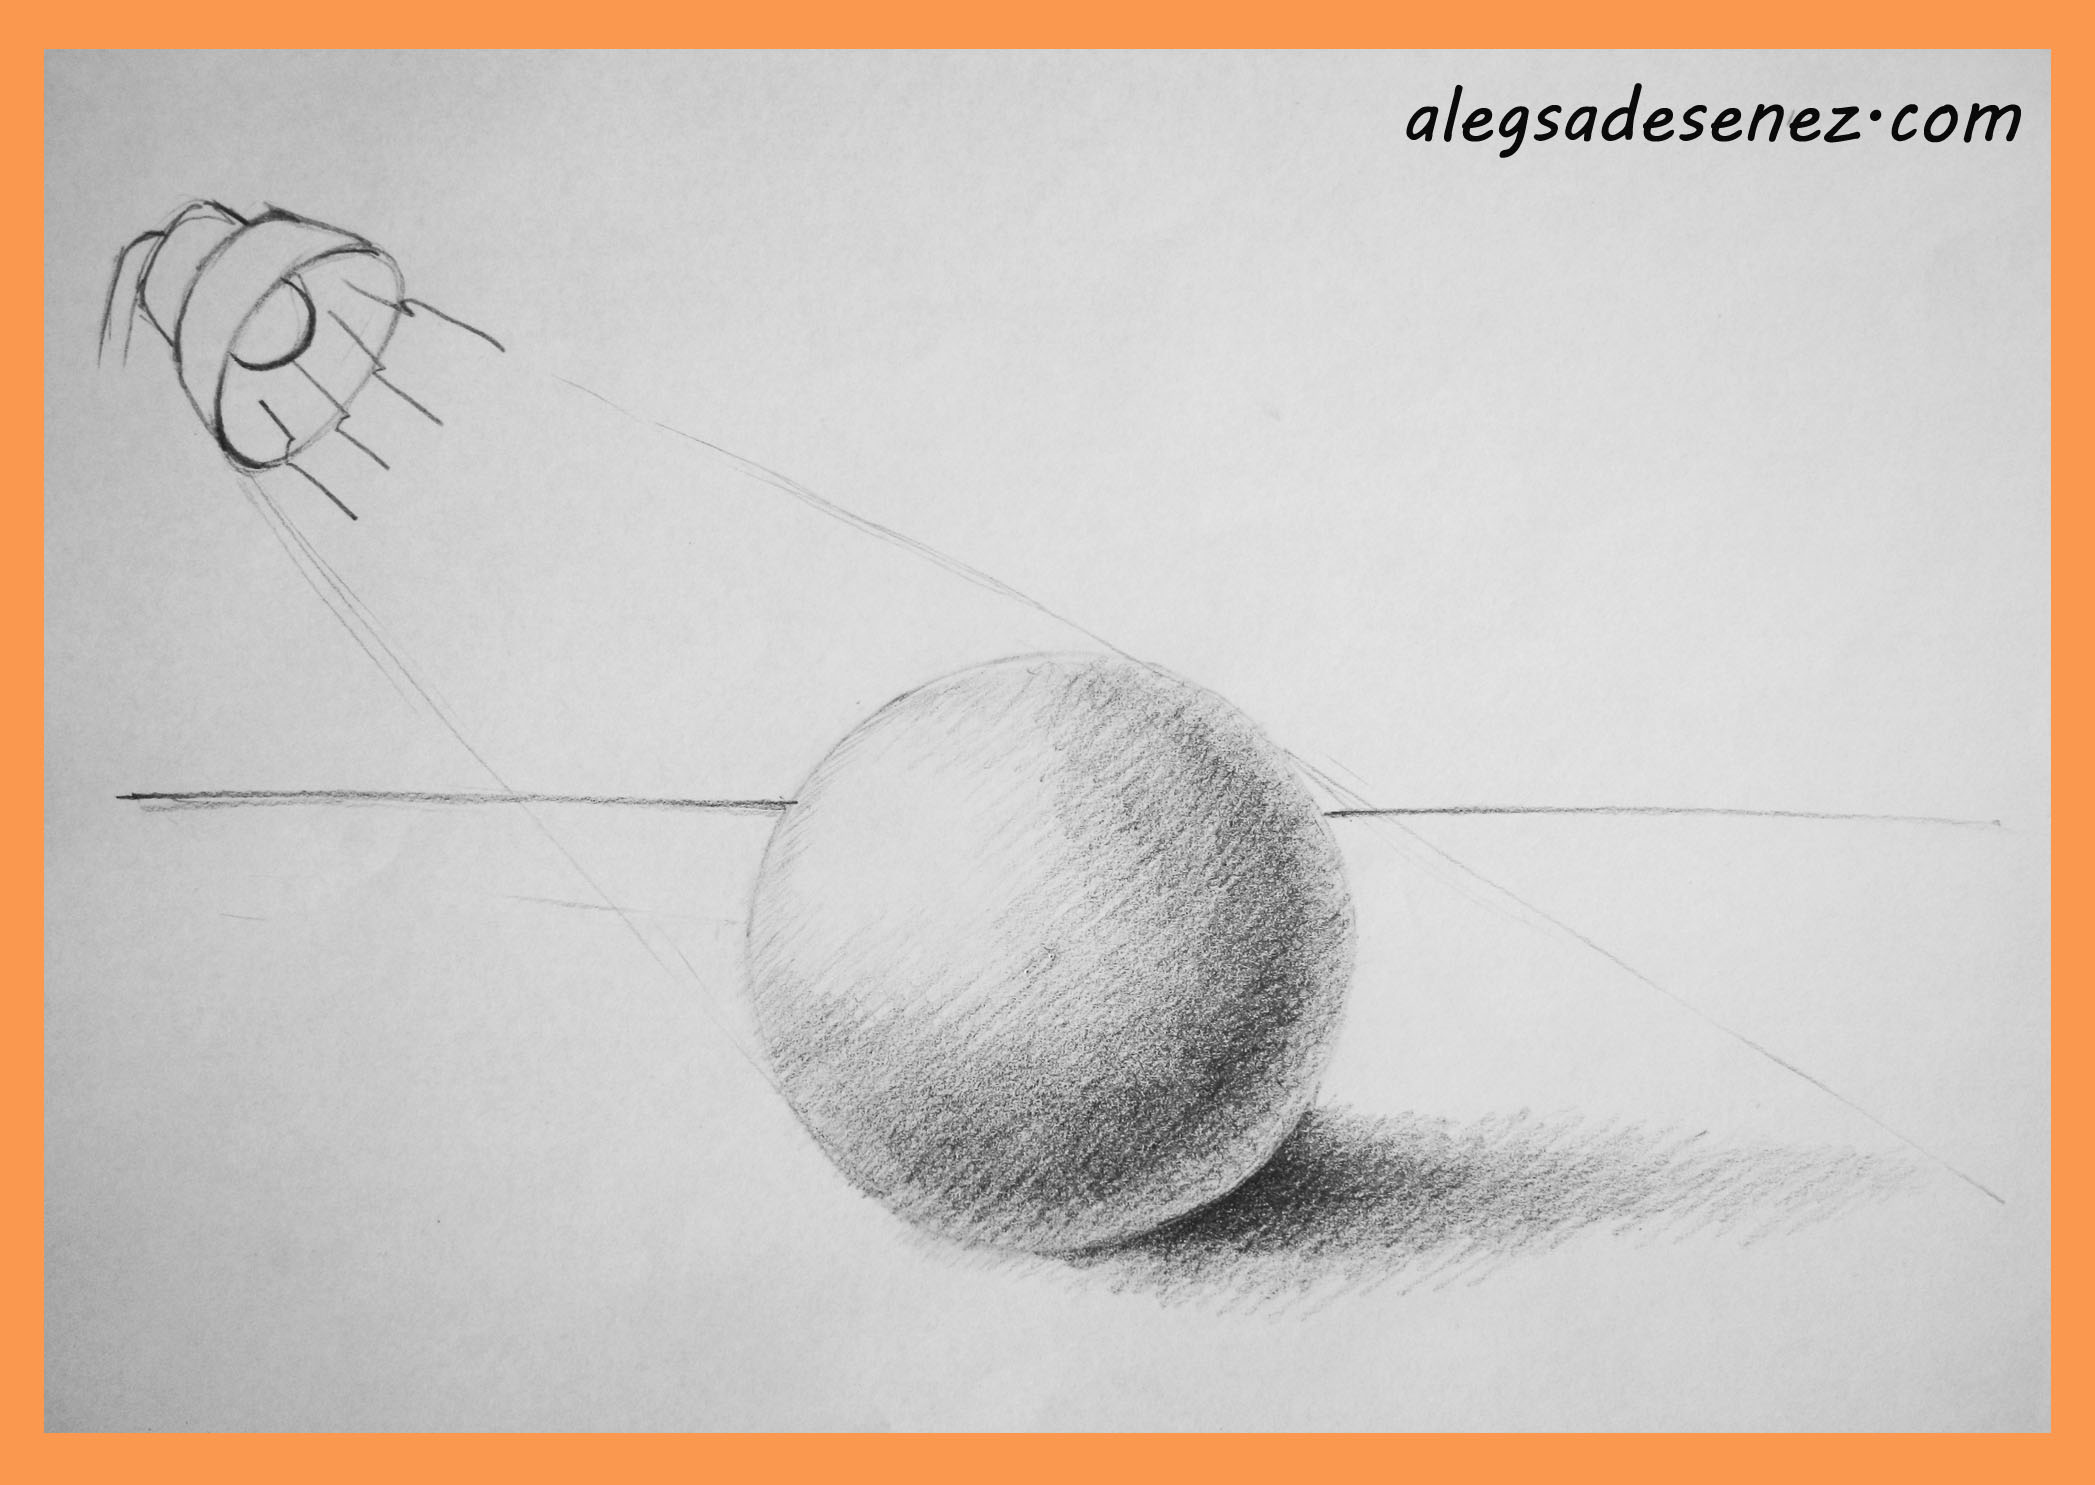 La ce ajuta sa stii sa desenezi o sfera